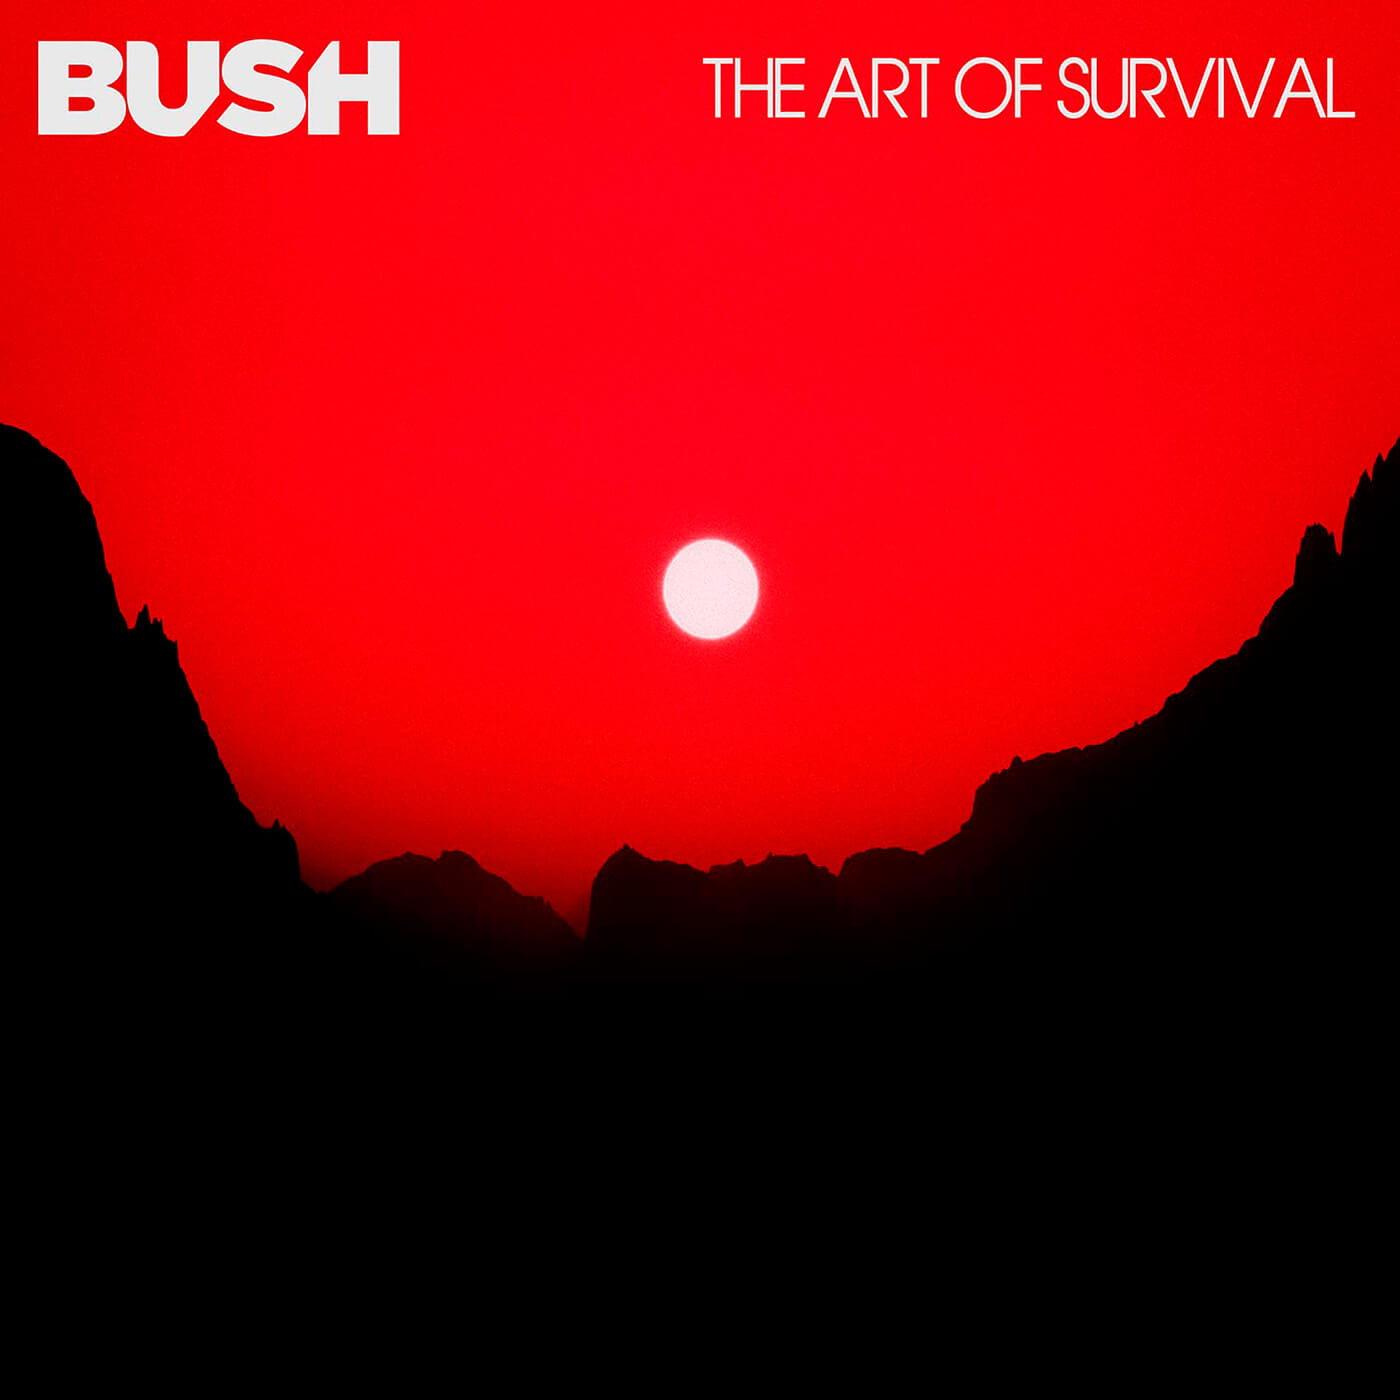 Bush - The Art Of Survival